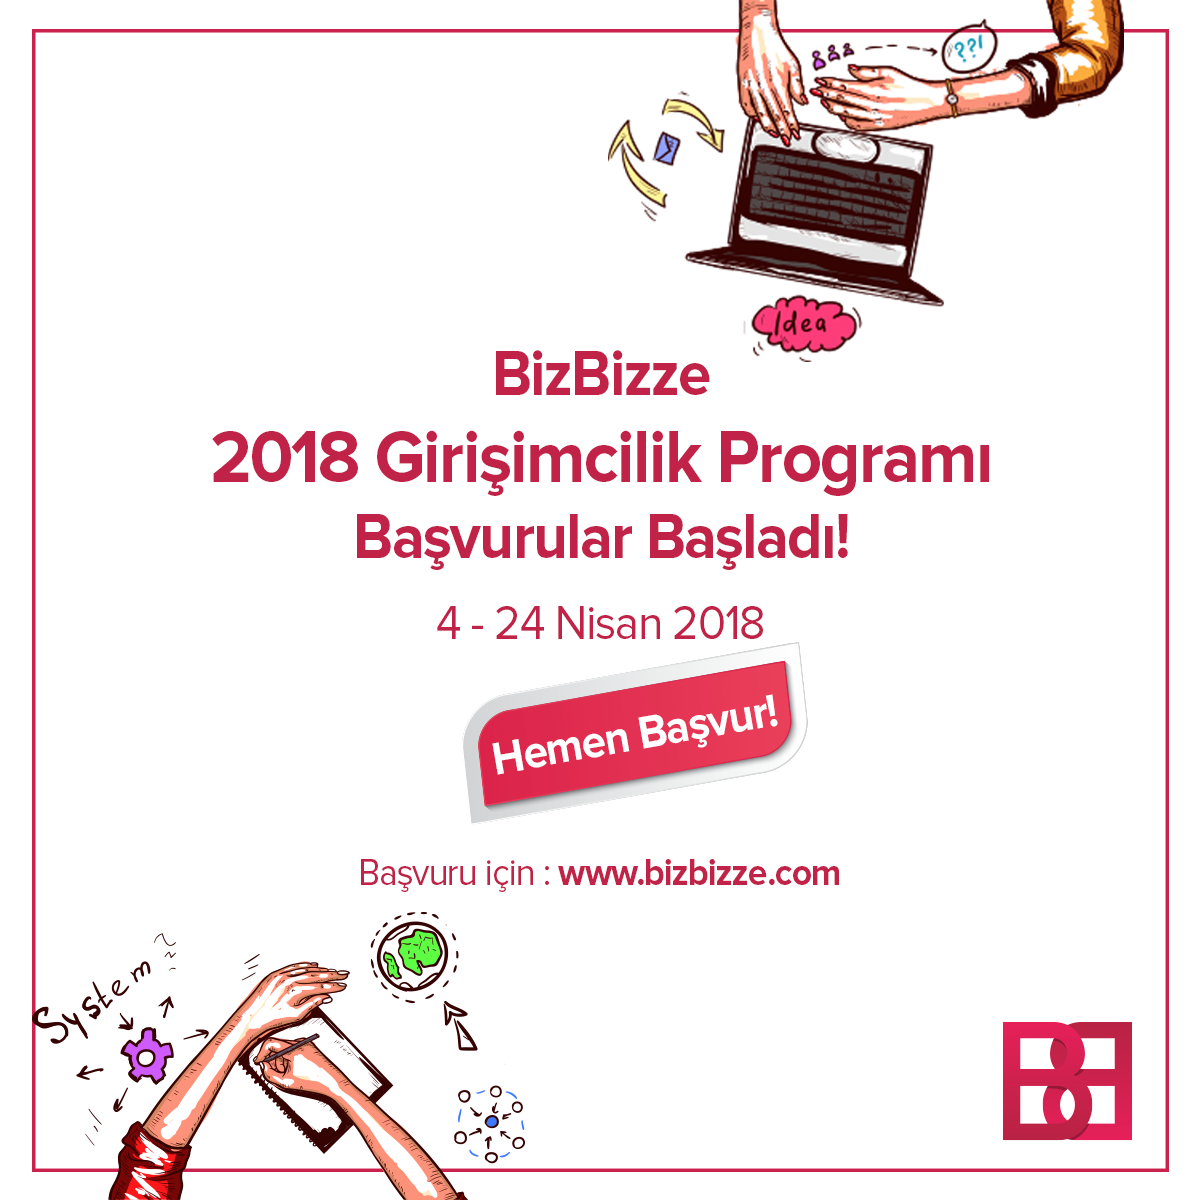 Bizbizze 2018 Girişimcilik Programı Başlıyor!